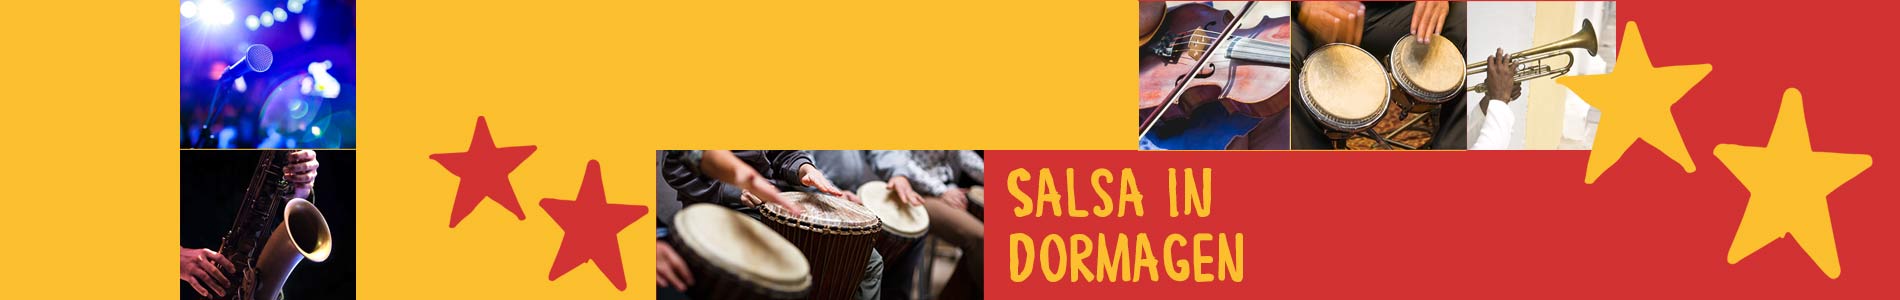 Salsa in Dormagen – Salsa lernen und tanzen, Tanzkurse, Partys, Veranstaltungen